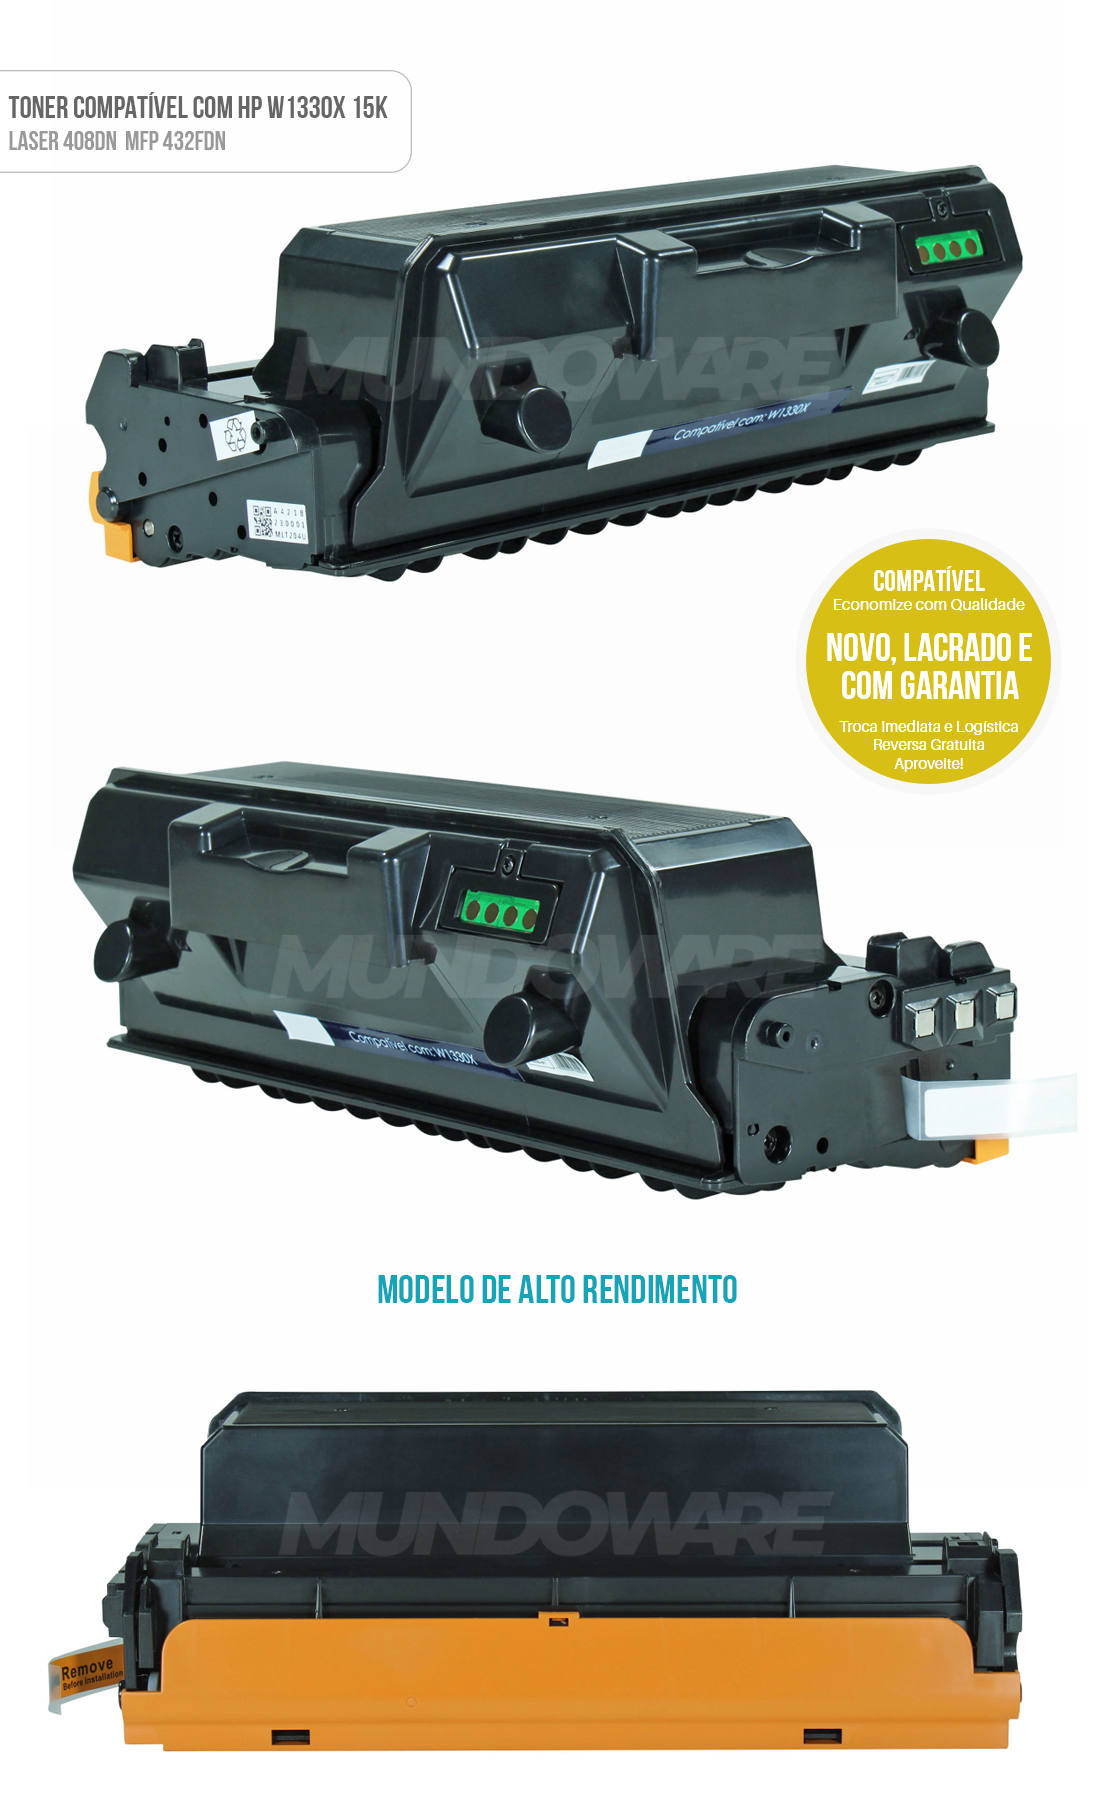 Toner Compatível com W1330X 1330 Alto Rendimento p/ Impressora HP Laserjet MFP M432fdn M408dn 432fdn 408dn Preto 15.000